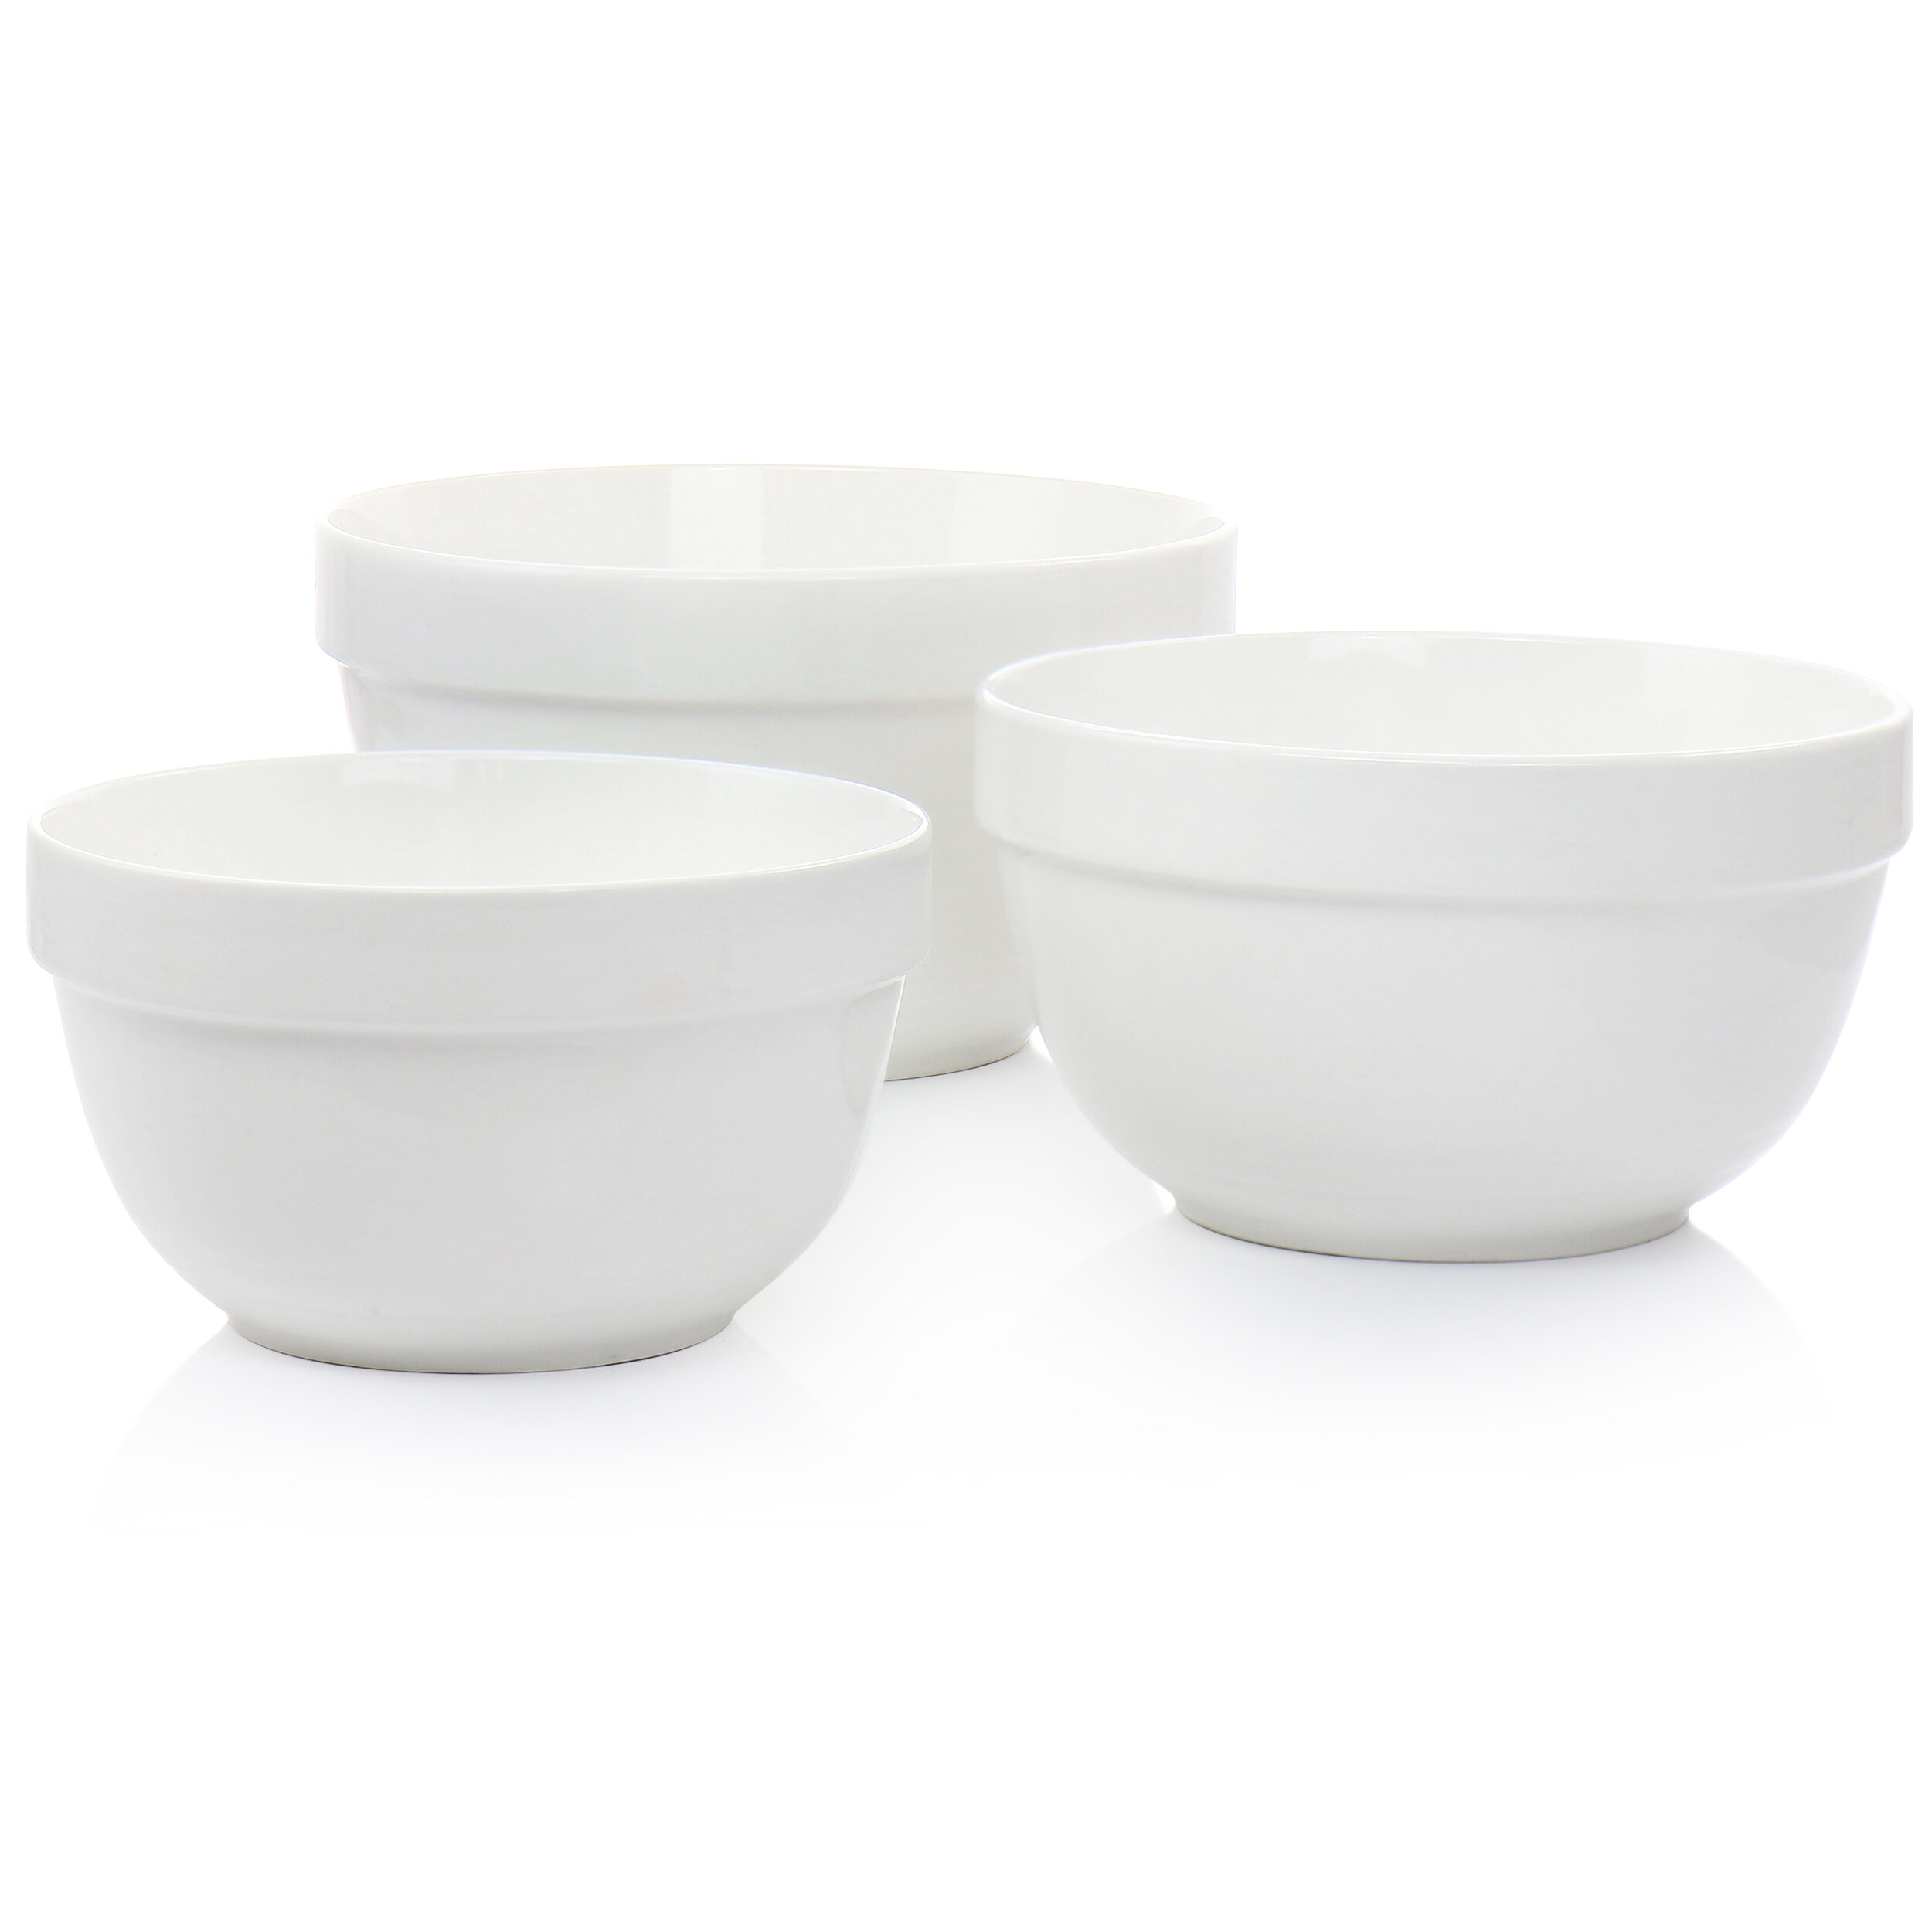 https://assets.wfcdn.com/im/48324414/compr-r85/1846/184649990/martha-stewart-everyday-3-piece-ceramic-mixing-bowl-set-in-white.jpg